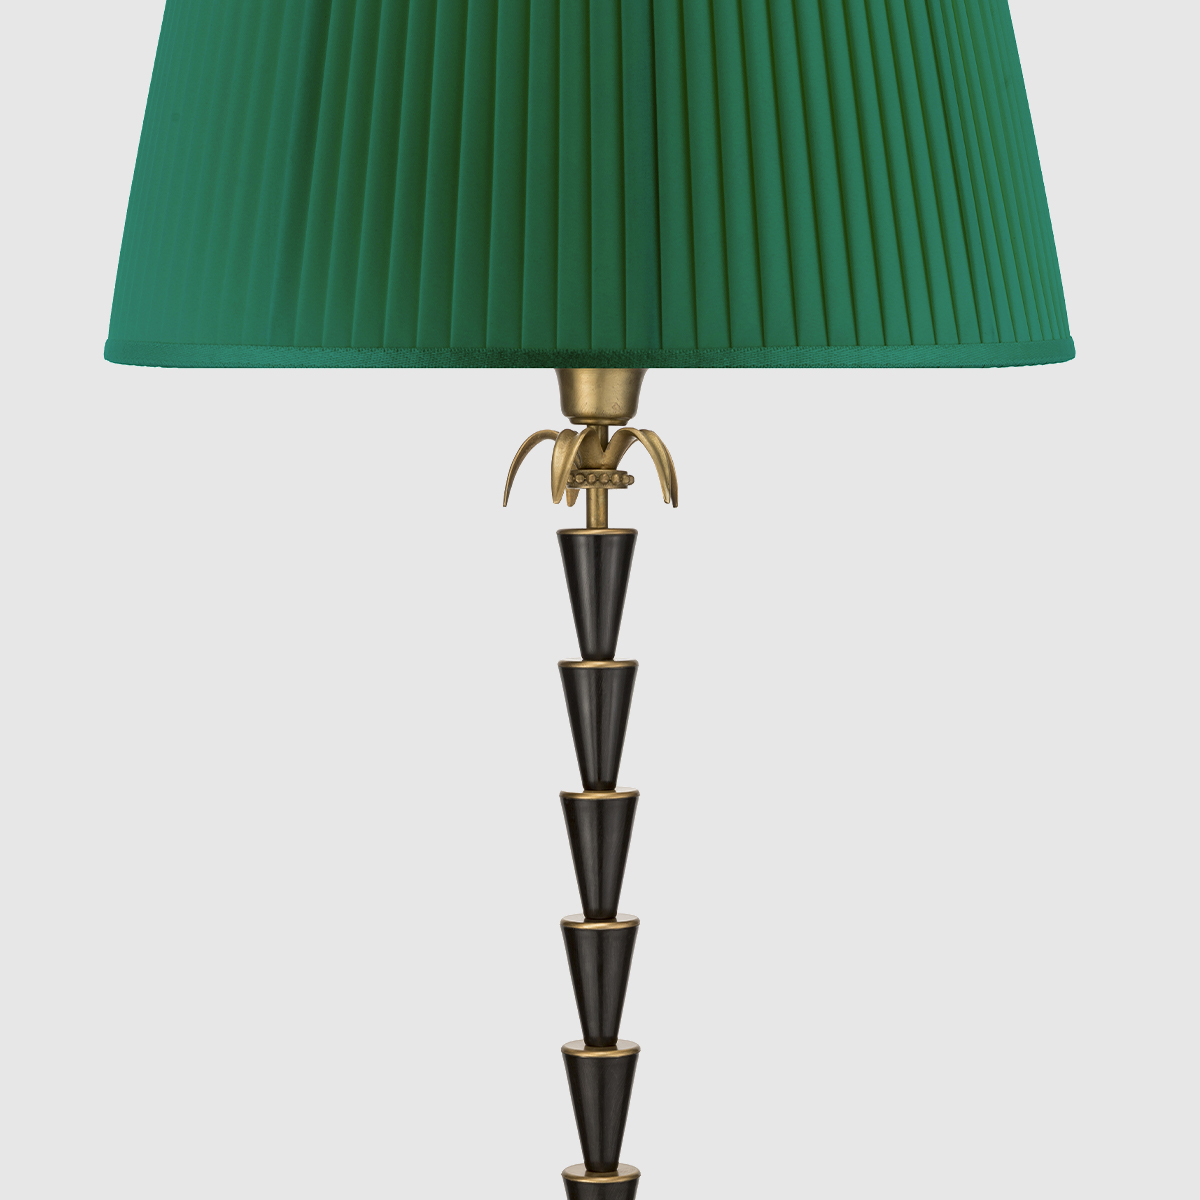 Lampada Quercia by Il Bronzetto